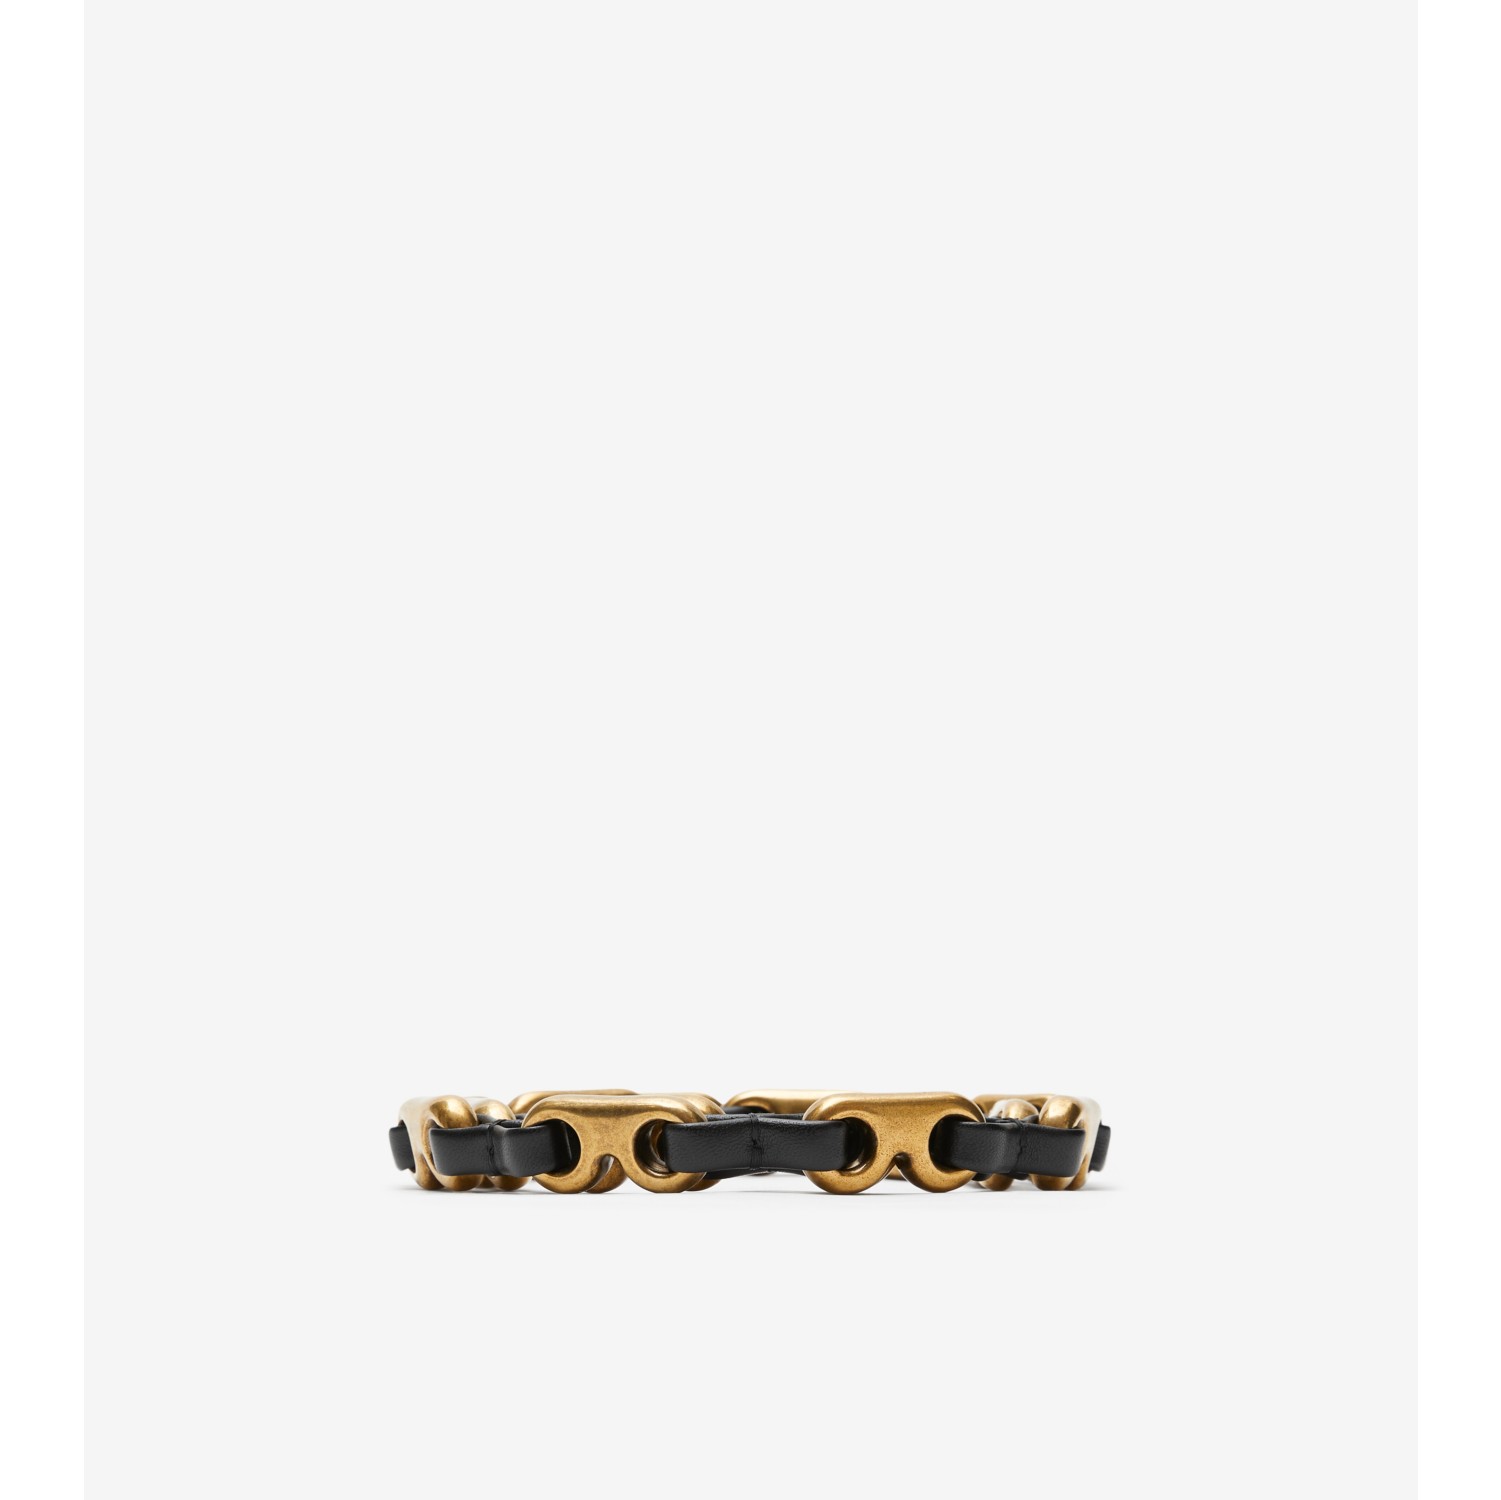 Burberry Metal Waist Belt - Gold Belts, Accessories - BUR364041